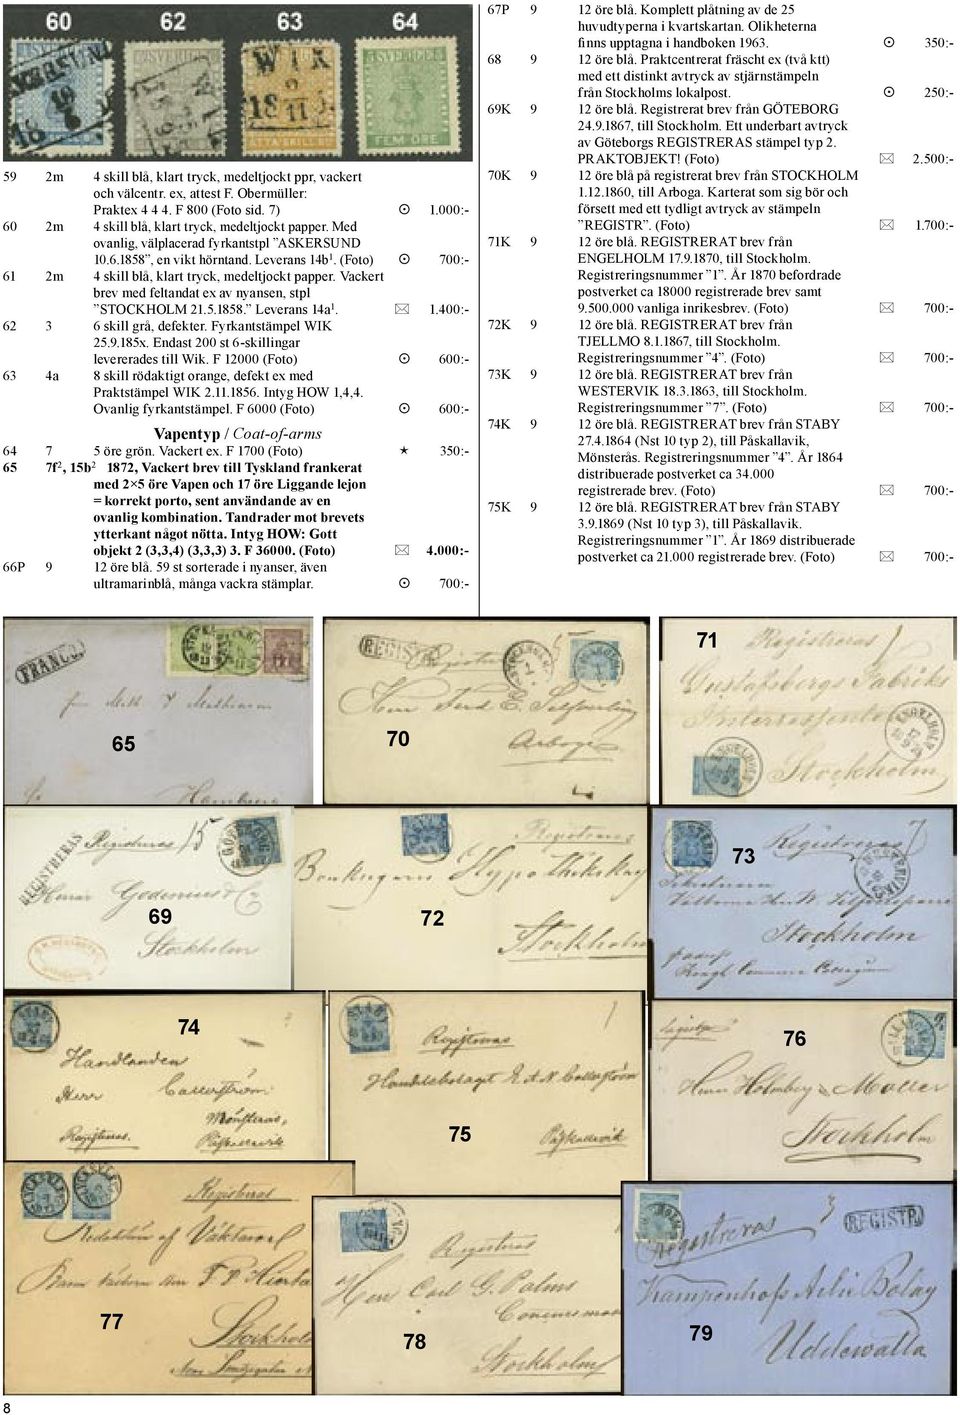 Vackert brev med feltandat ex av nyansen, stpl STOCKHOLM 21.5.1858. Leverans 14a 1. 1.400:- 62 3 6 skill grå, defekter. Fyrkantstämpel WIK 25.9.185x. Endast 200 st 6-skillingar levererades till Wik.